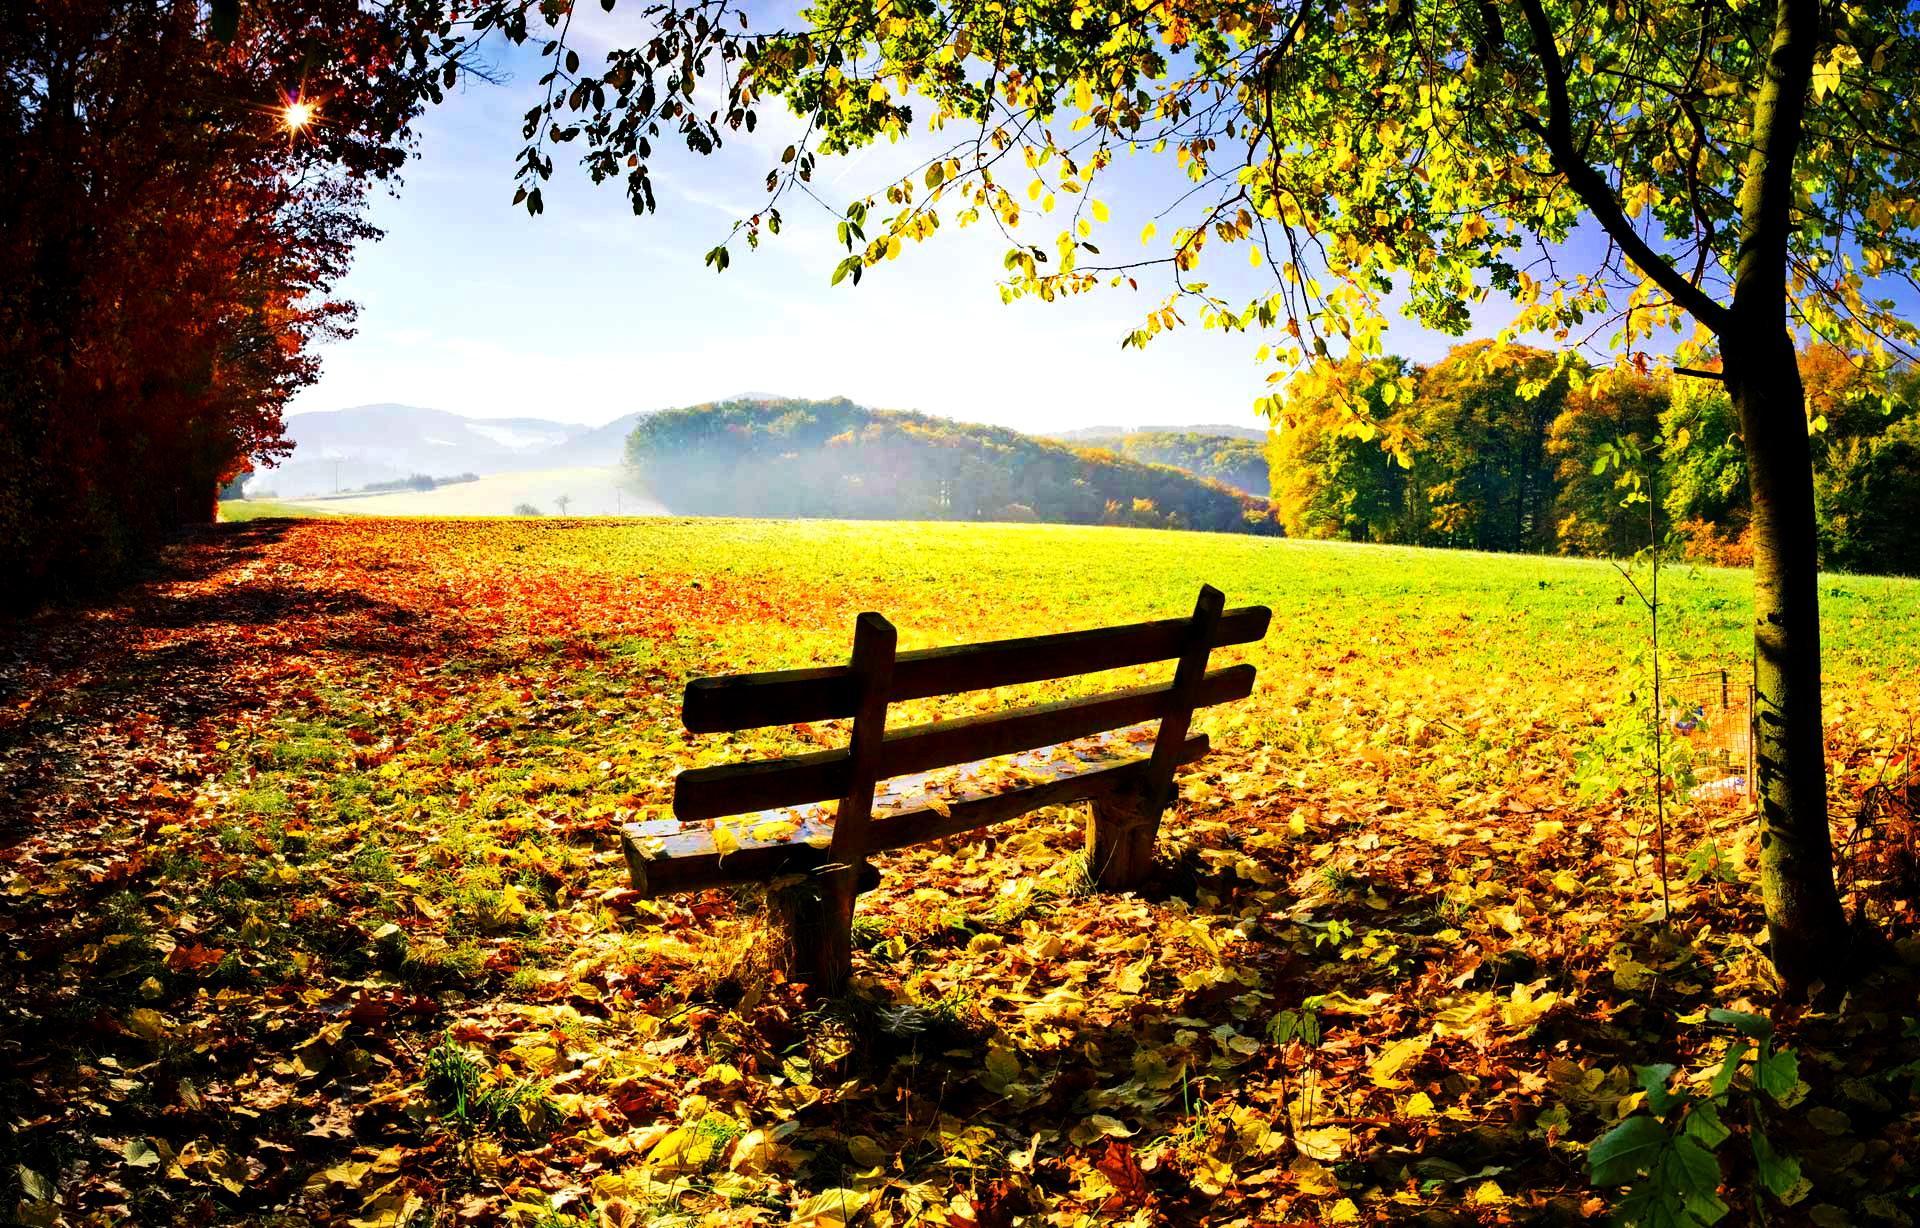 Autumn rest wallpaper. nature and landscape